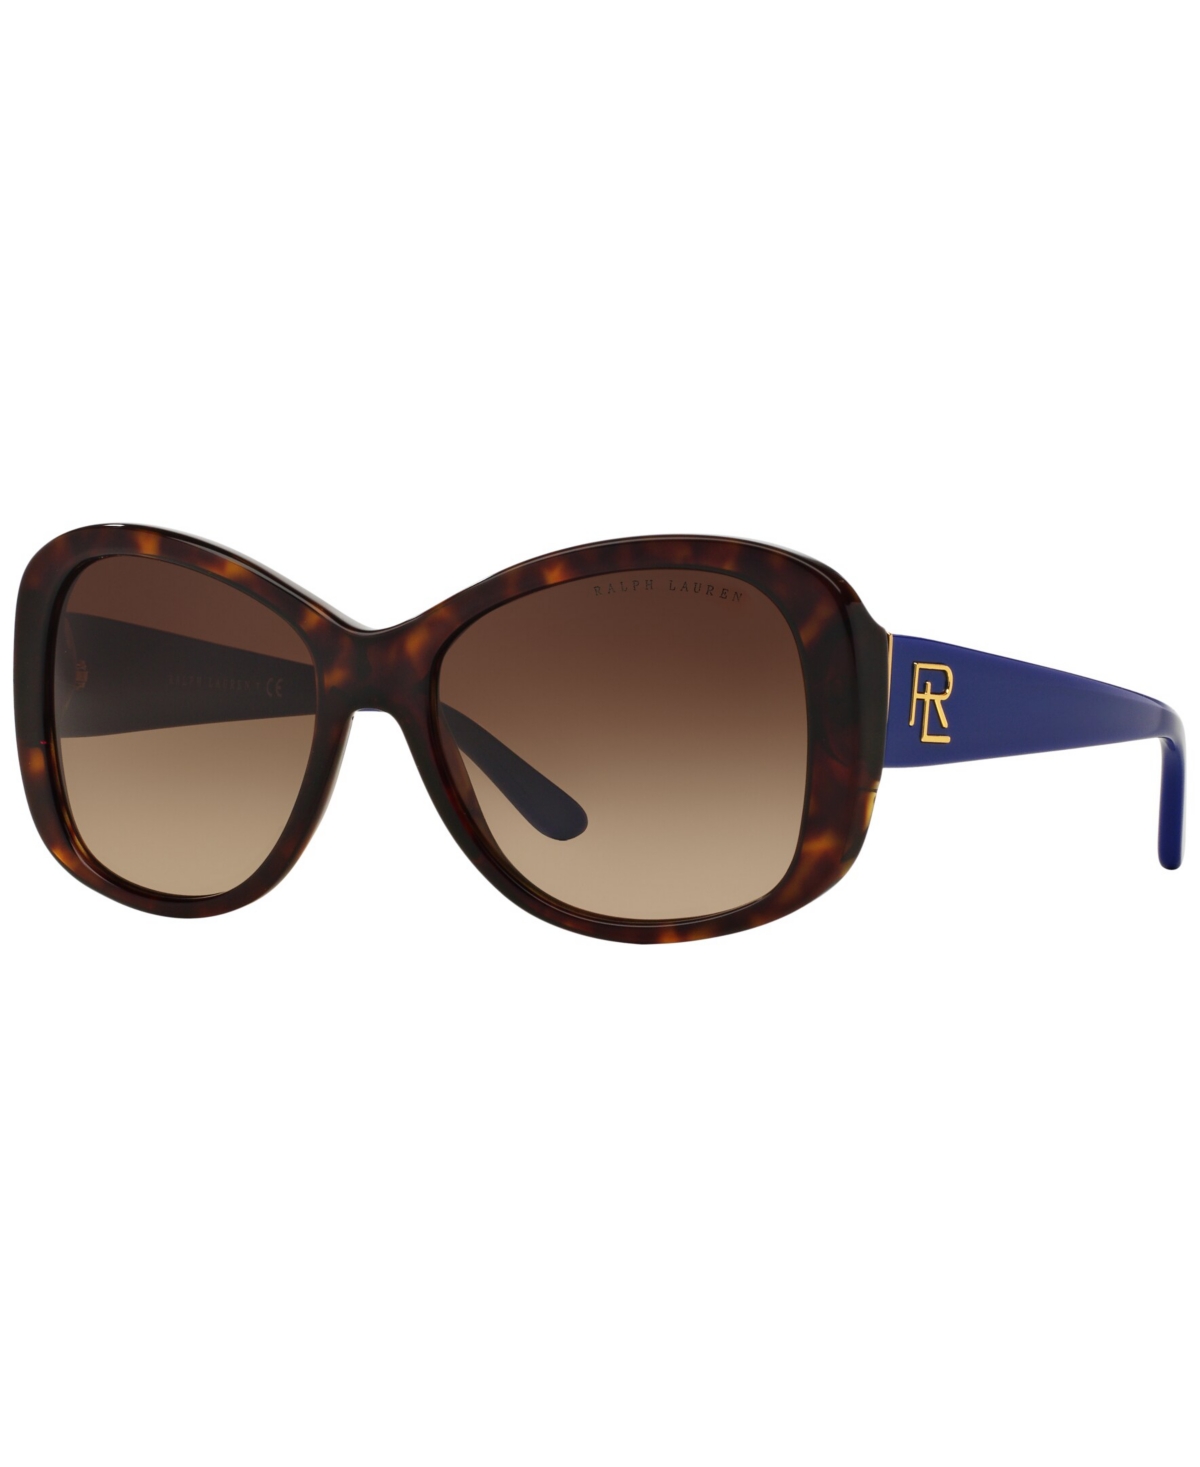 Ralph Lauren Women's Sunglasses, Rl8144 In Shiny Dark Havana